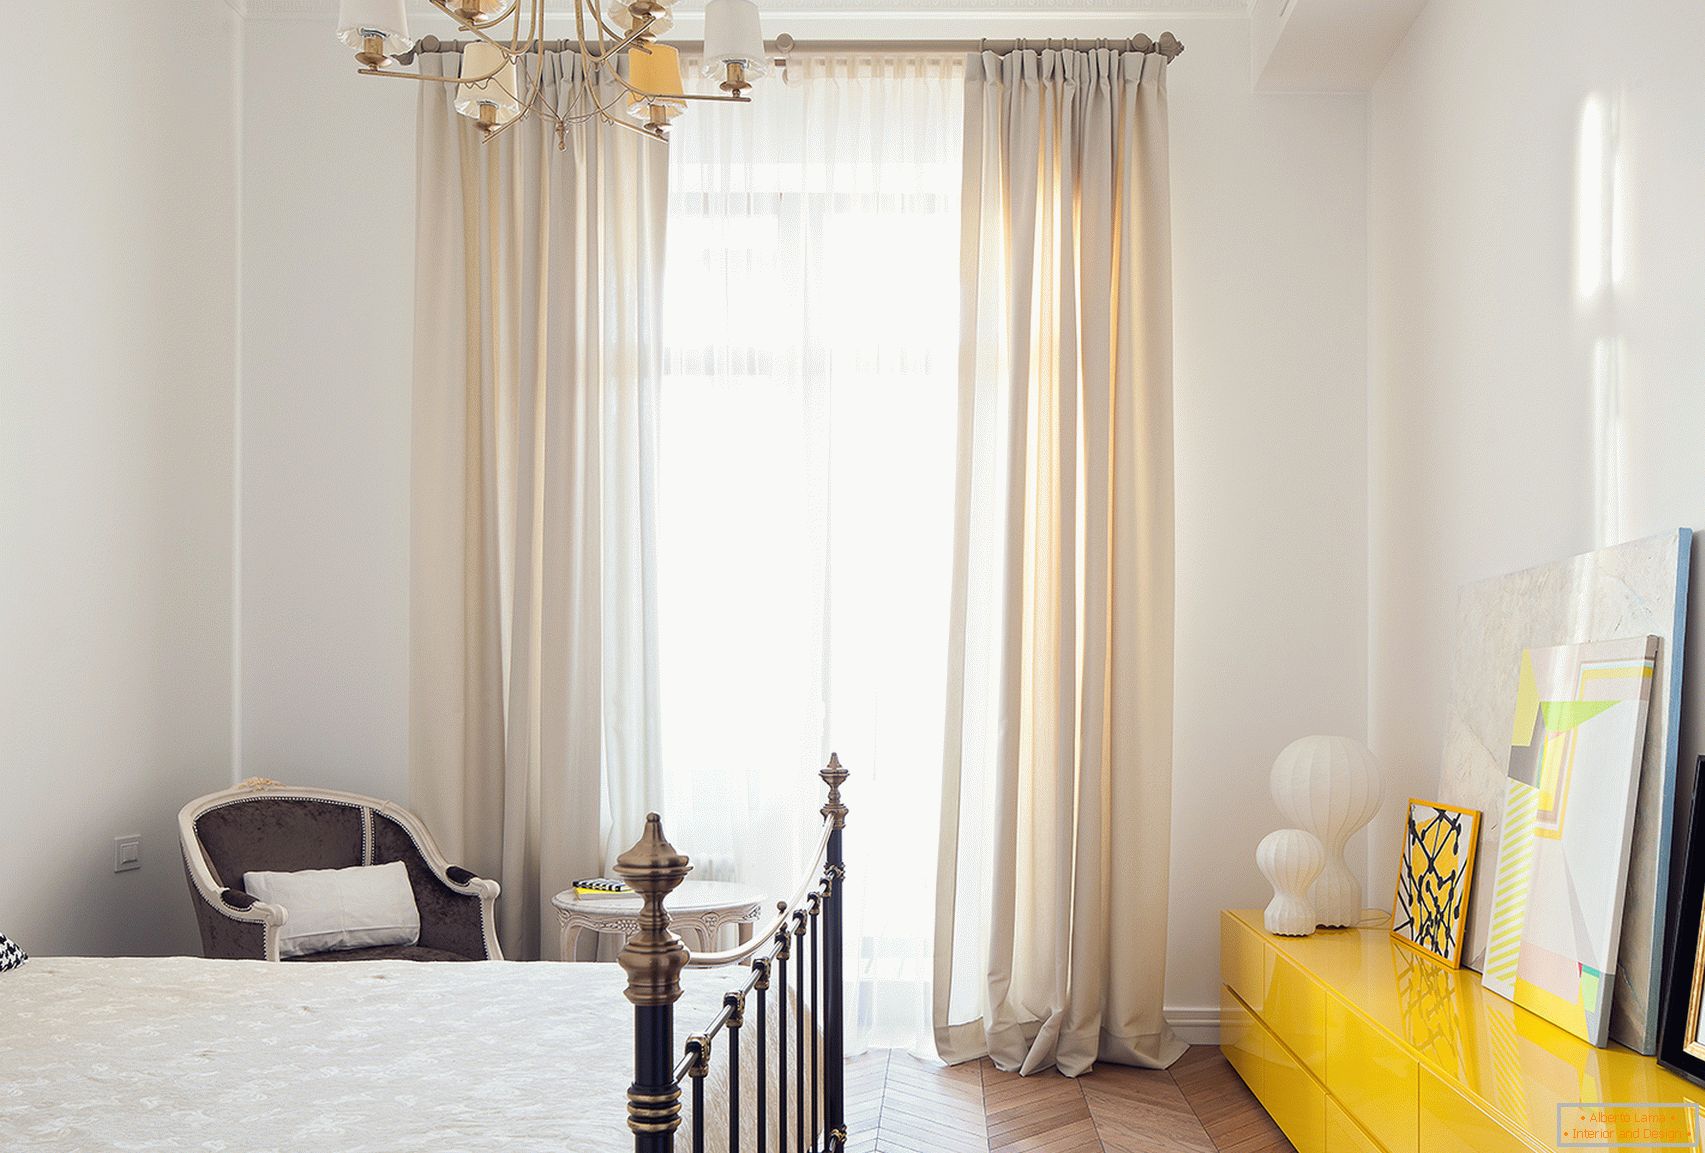 Malé izby, staré vo svetlých farbách, sa zdajú byť priestrannejšie